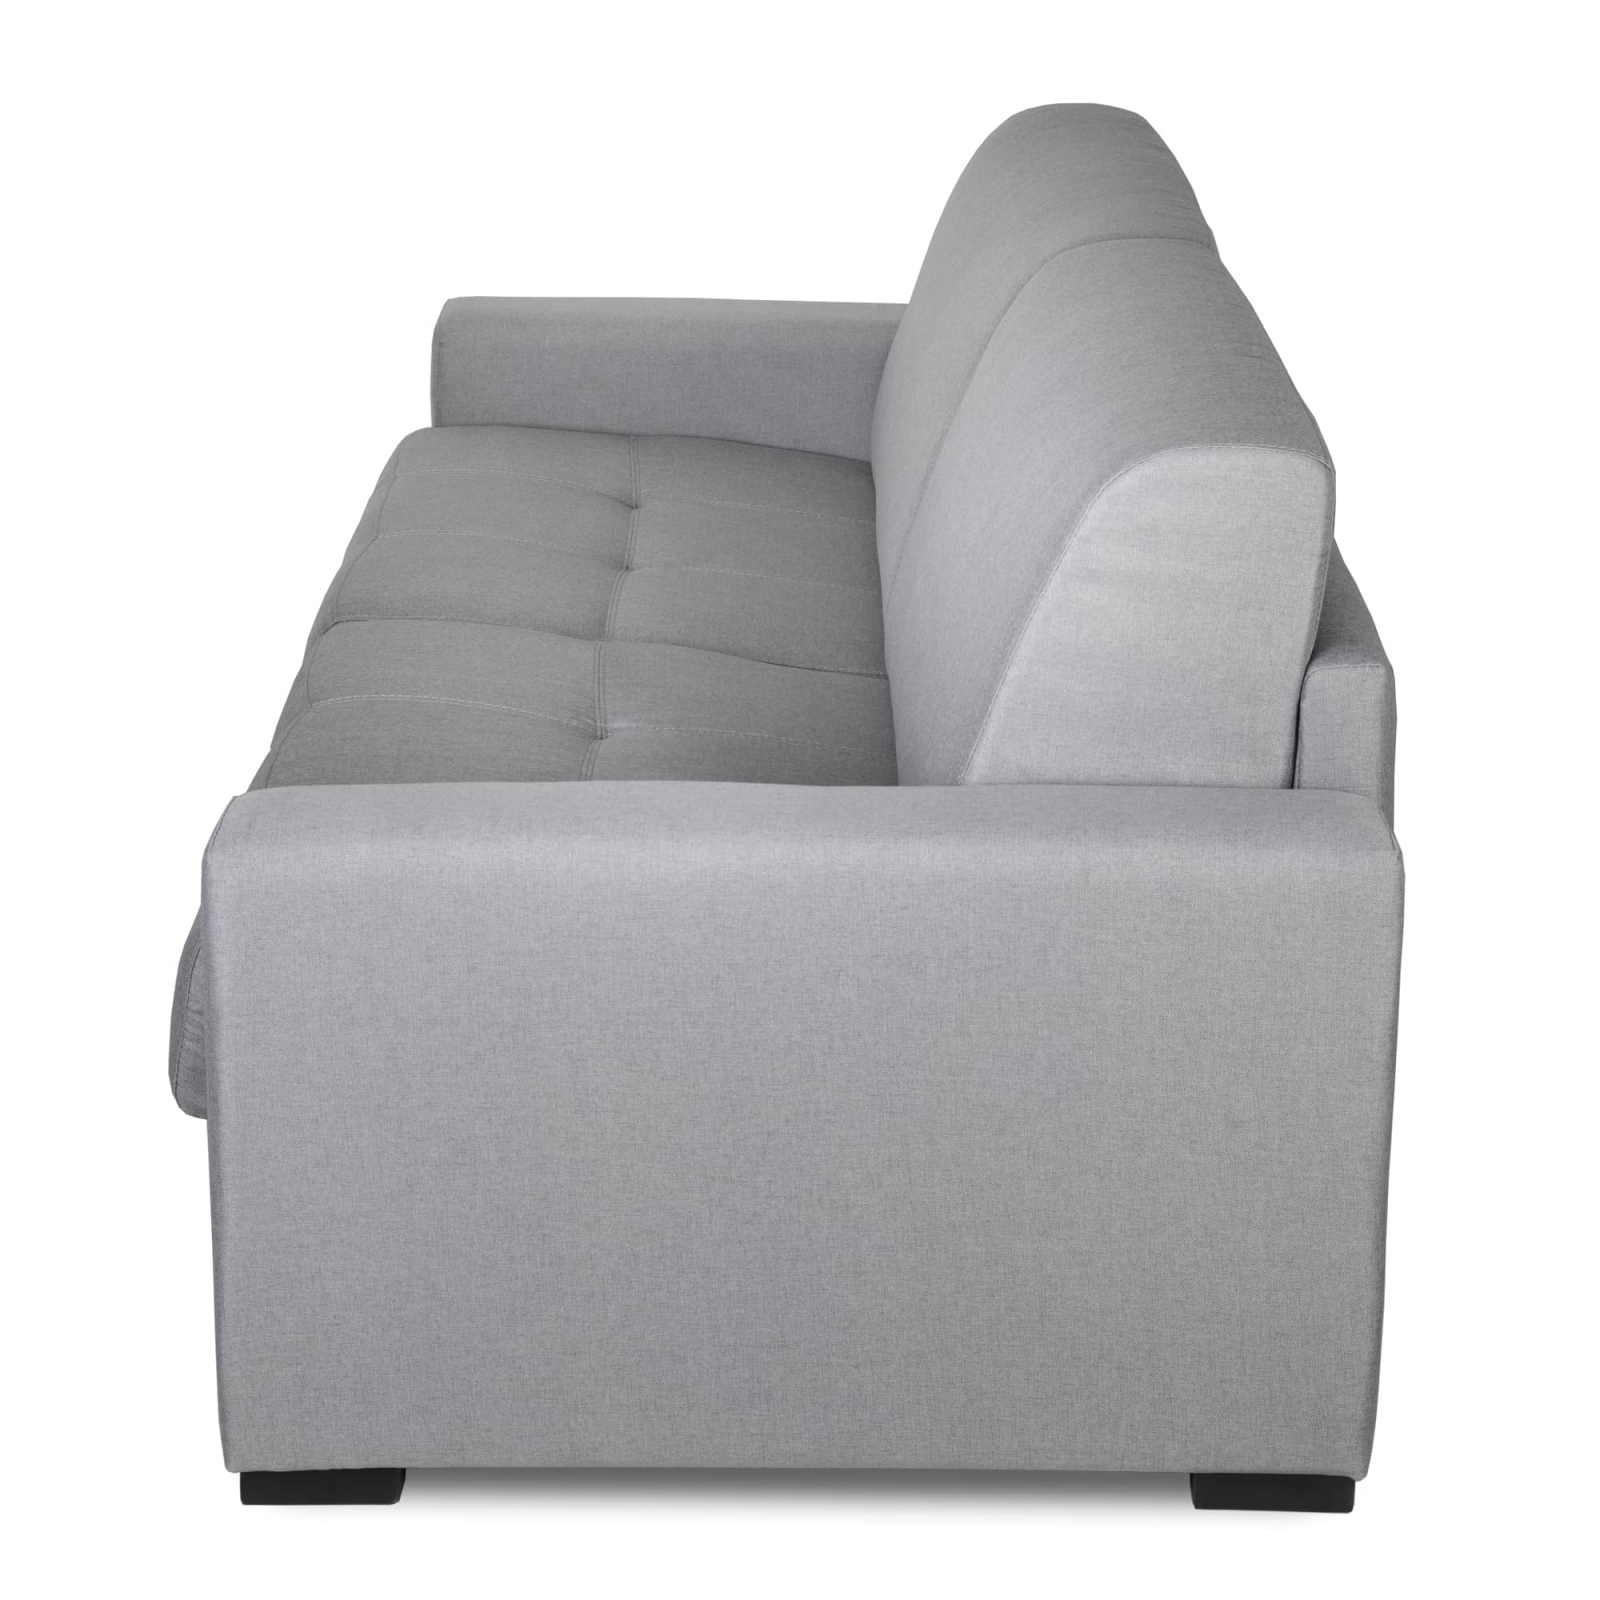 Canapé convertible 3 places en tissu gris clair ouverture express matelas 14 cm